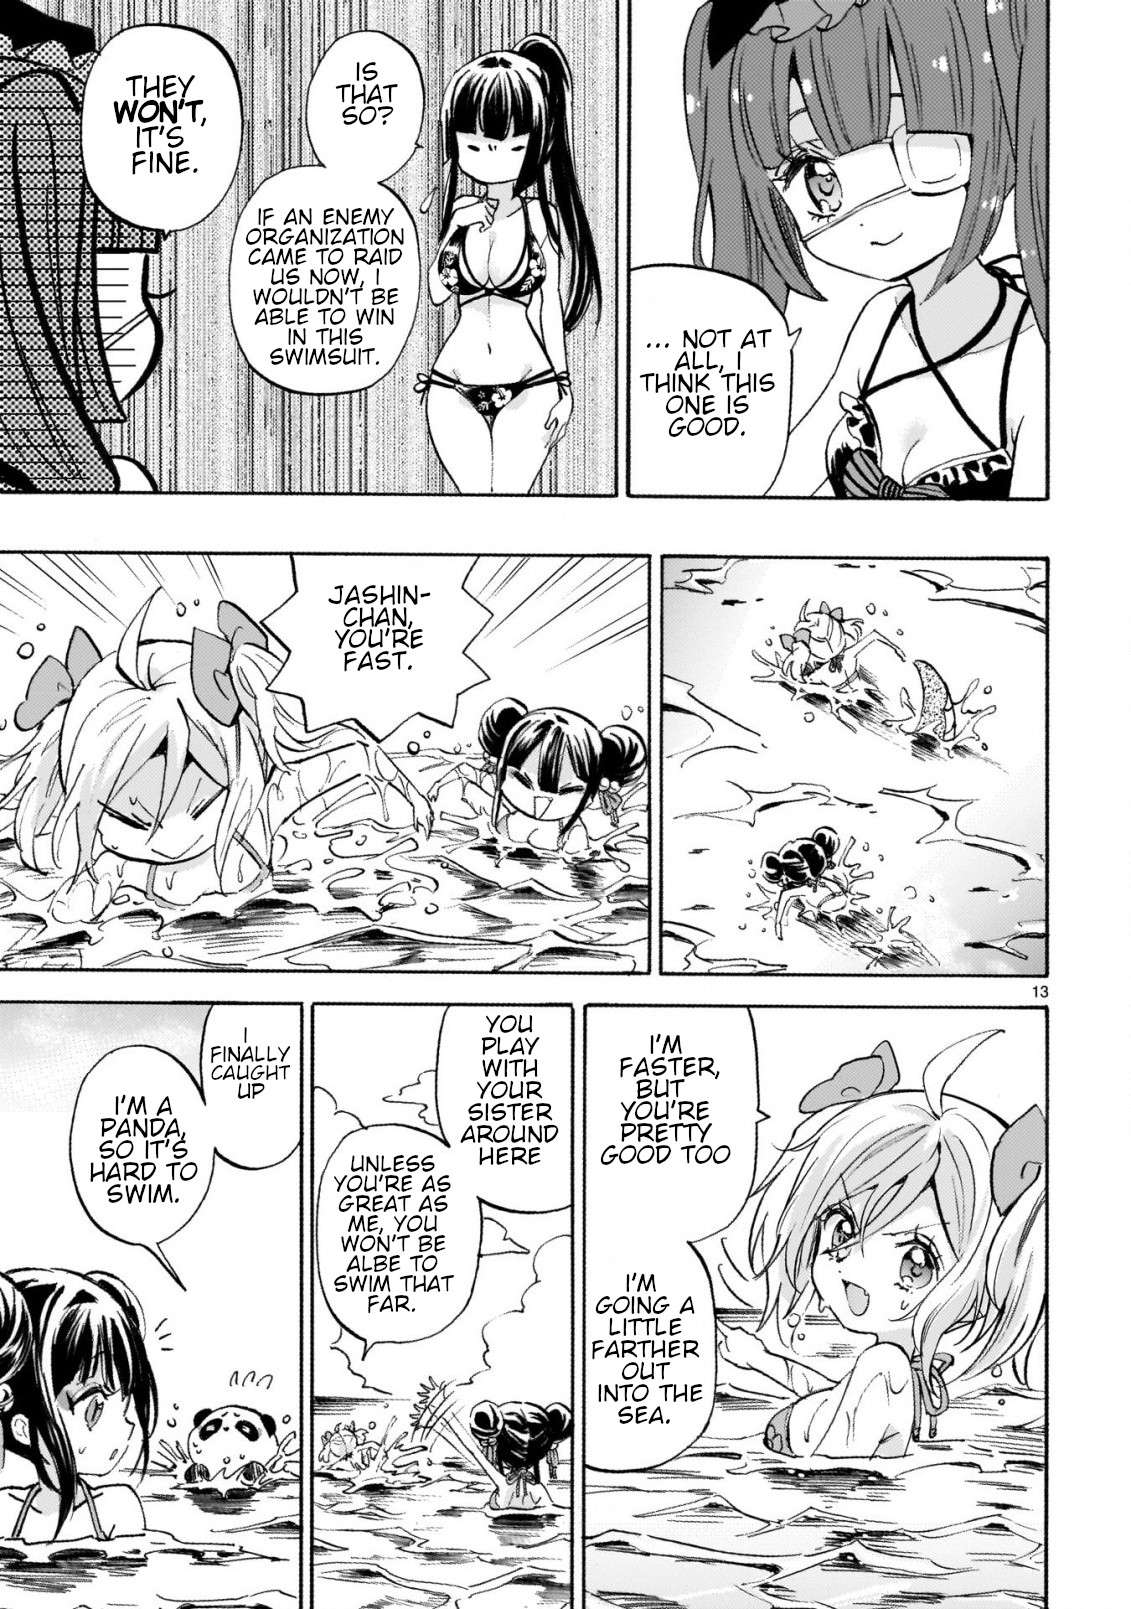 Jashin-chan Dropkick chapter 243 page 13